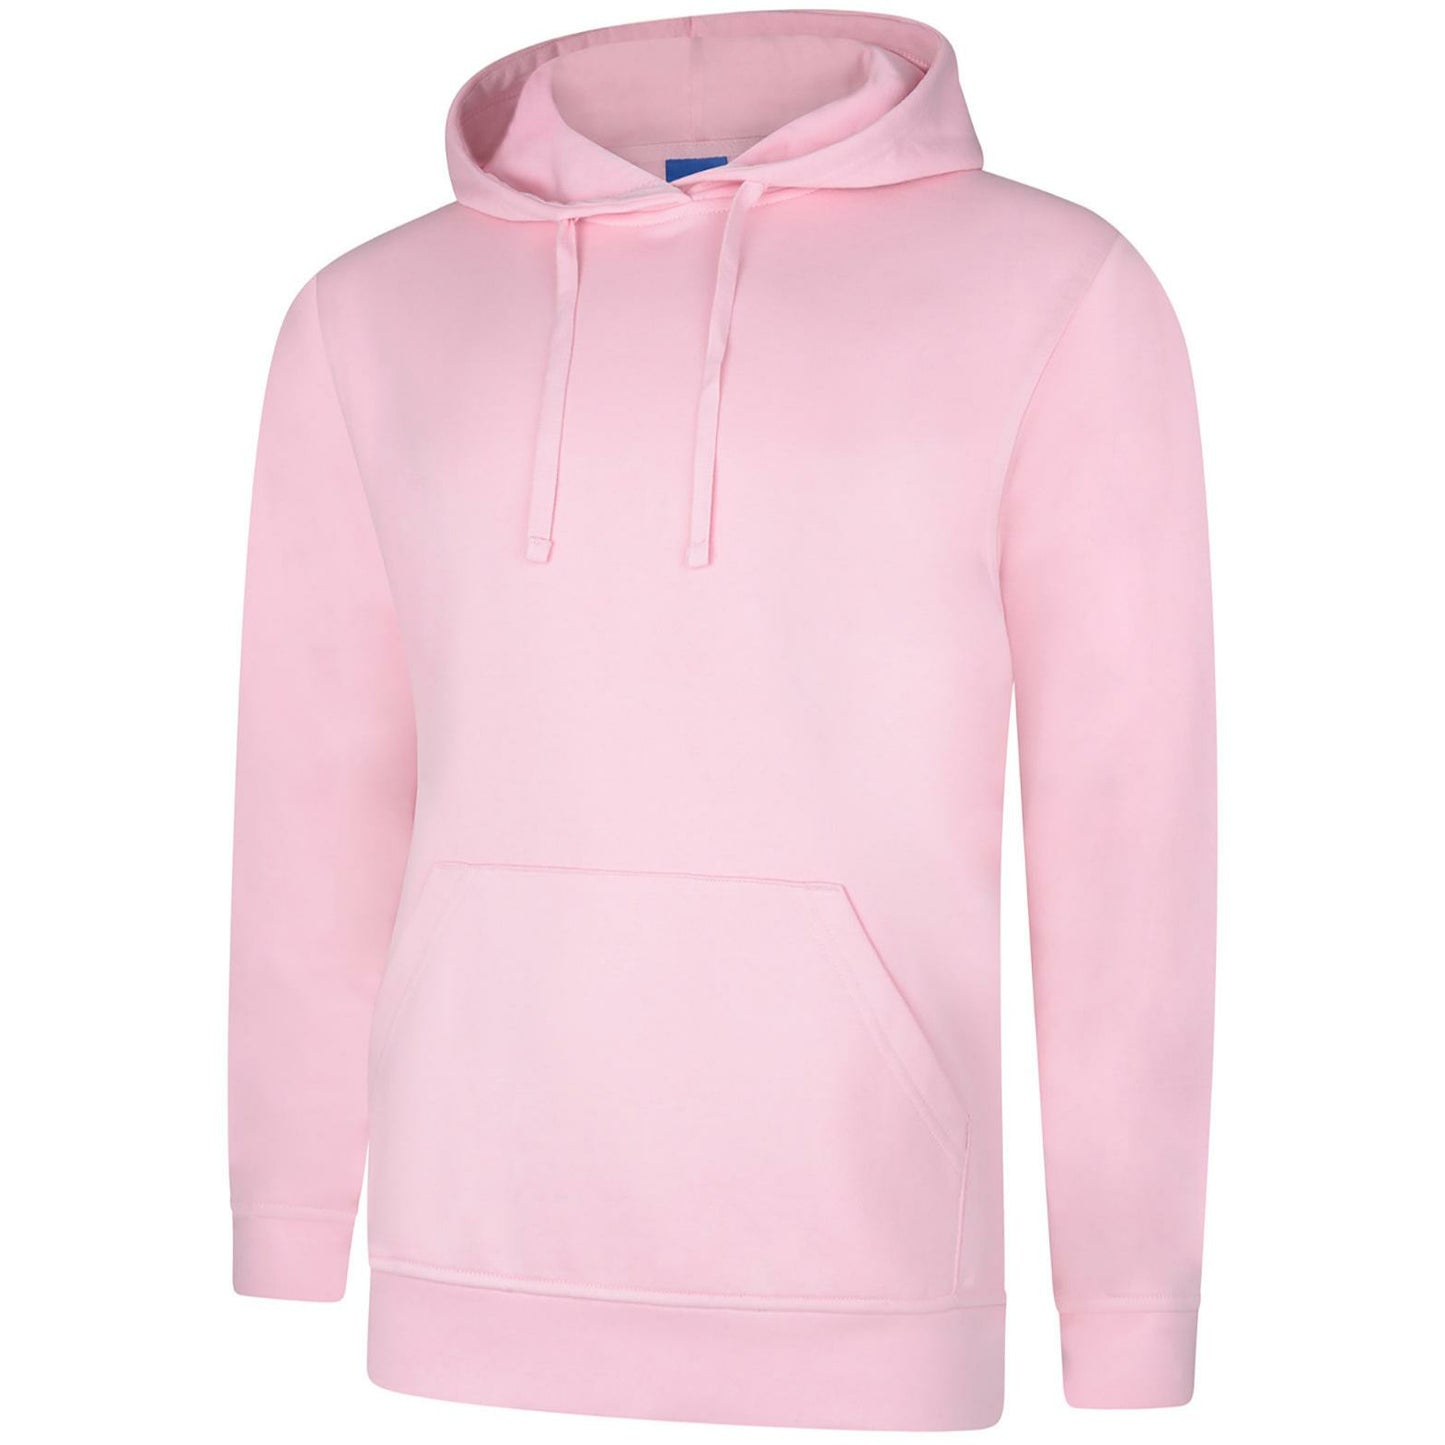 Deluxe Hooded Sweatshirt (XS - M) Pink